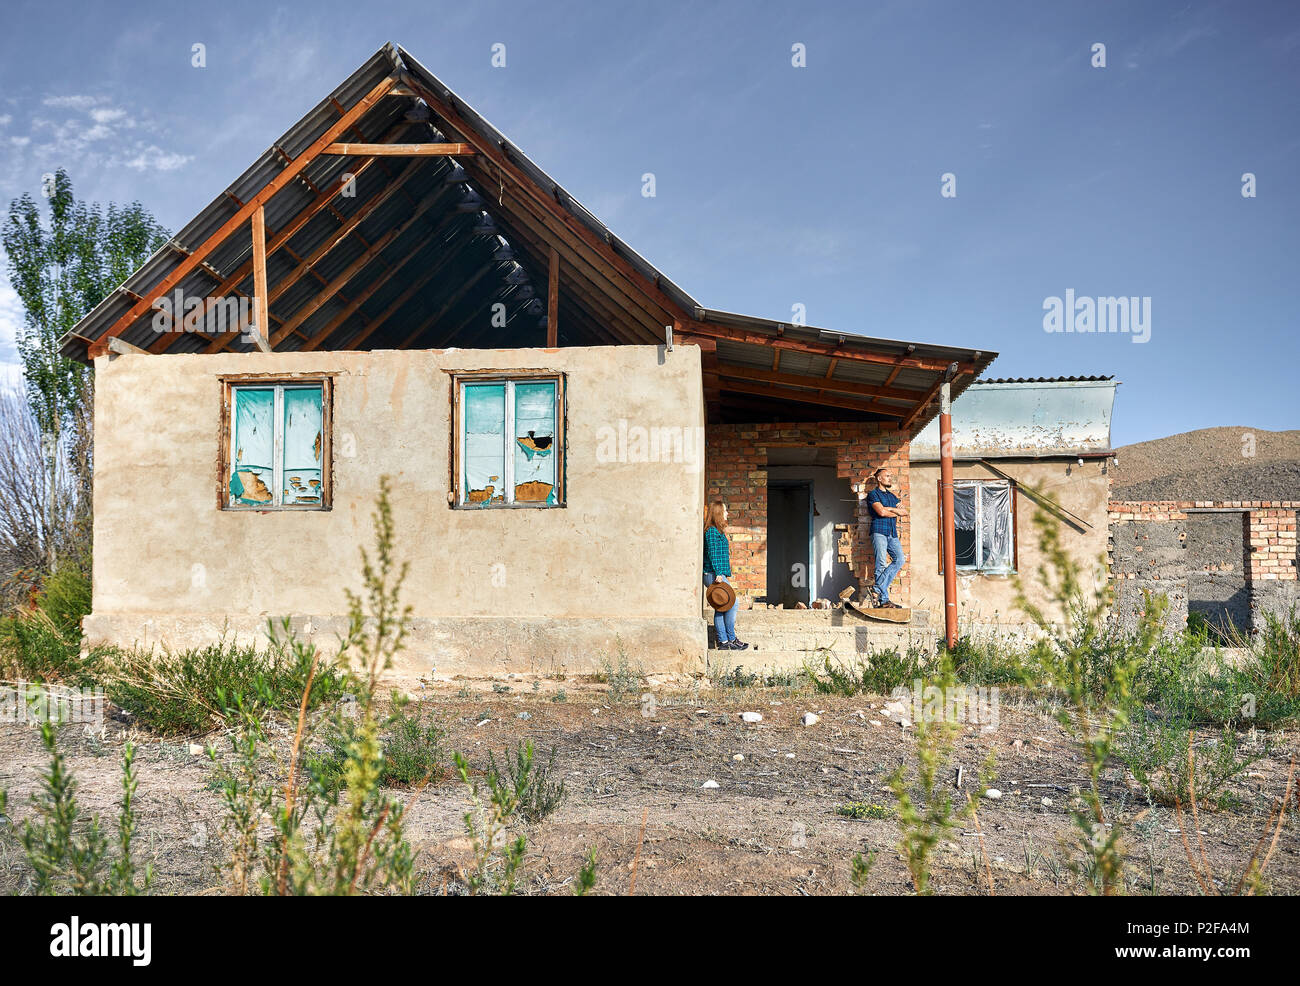 Frau mit Hut und Mensch in kariertes Hemd auf den Ruinen der alten Haus im Dorf Stockfoto